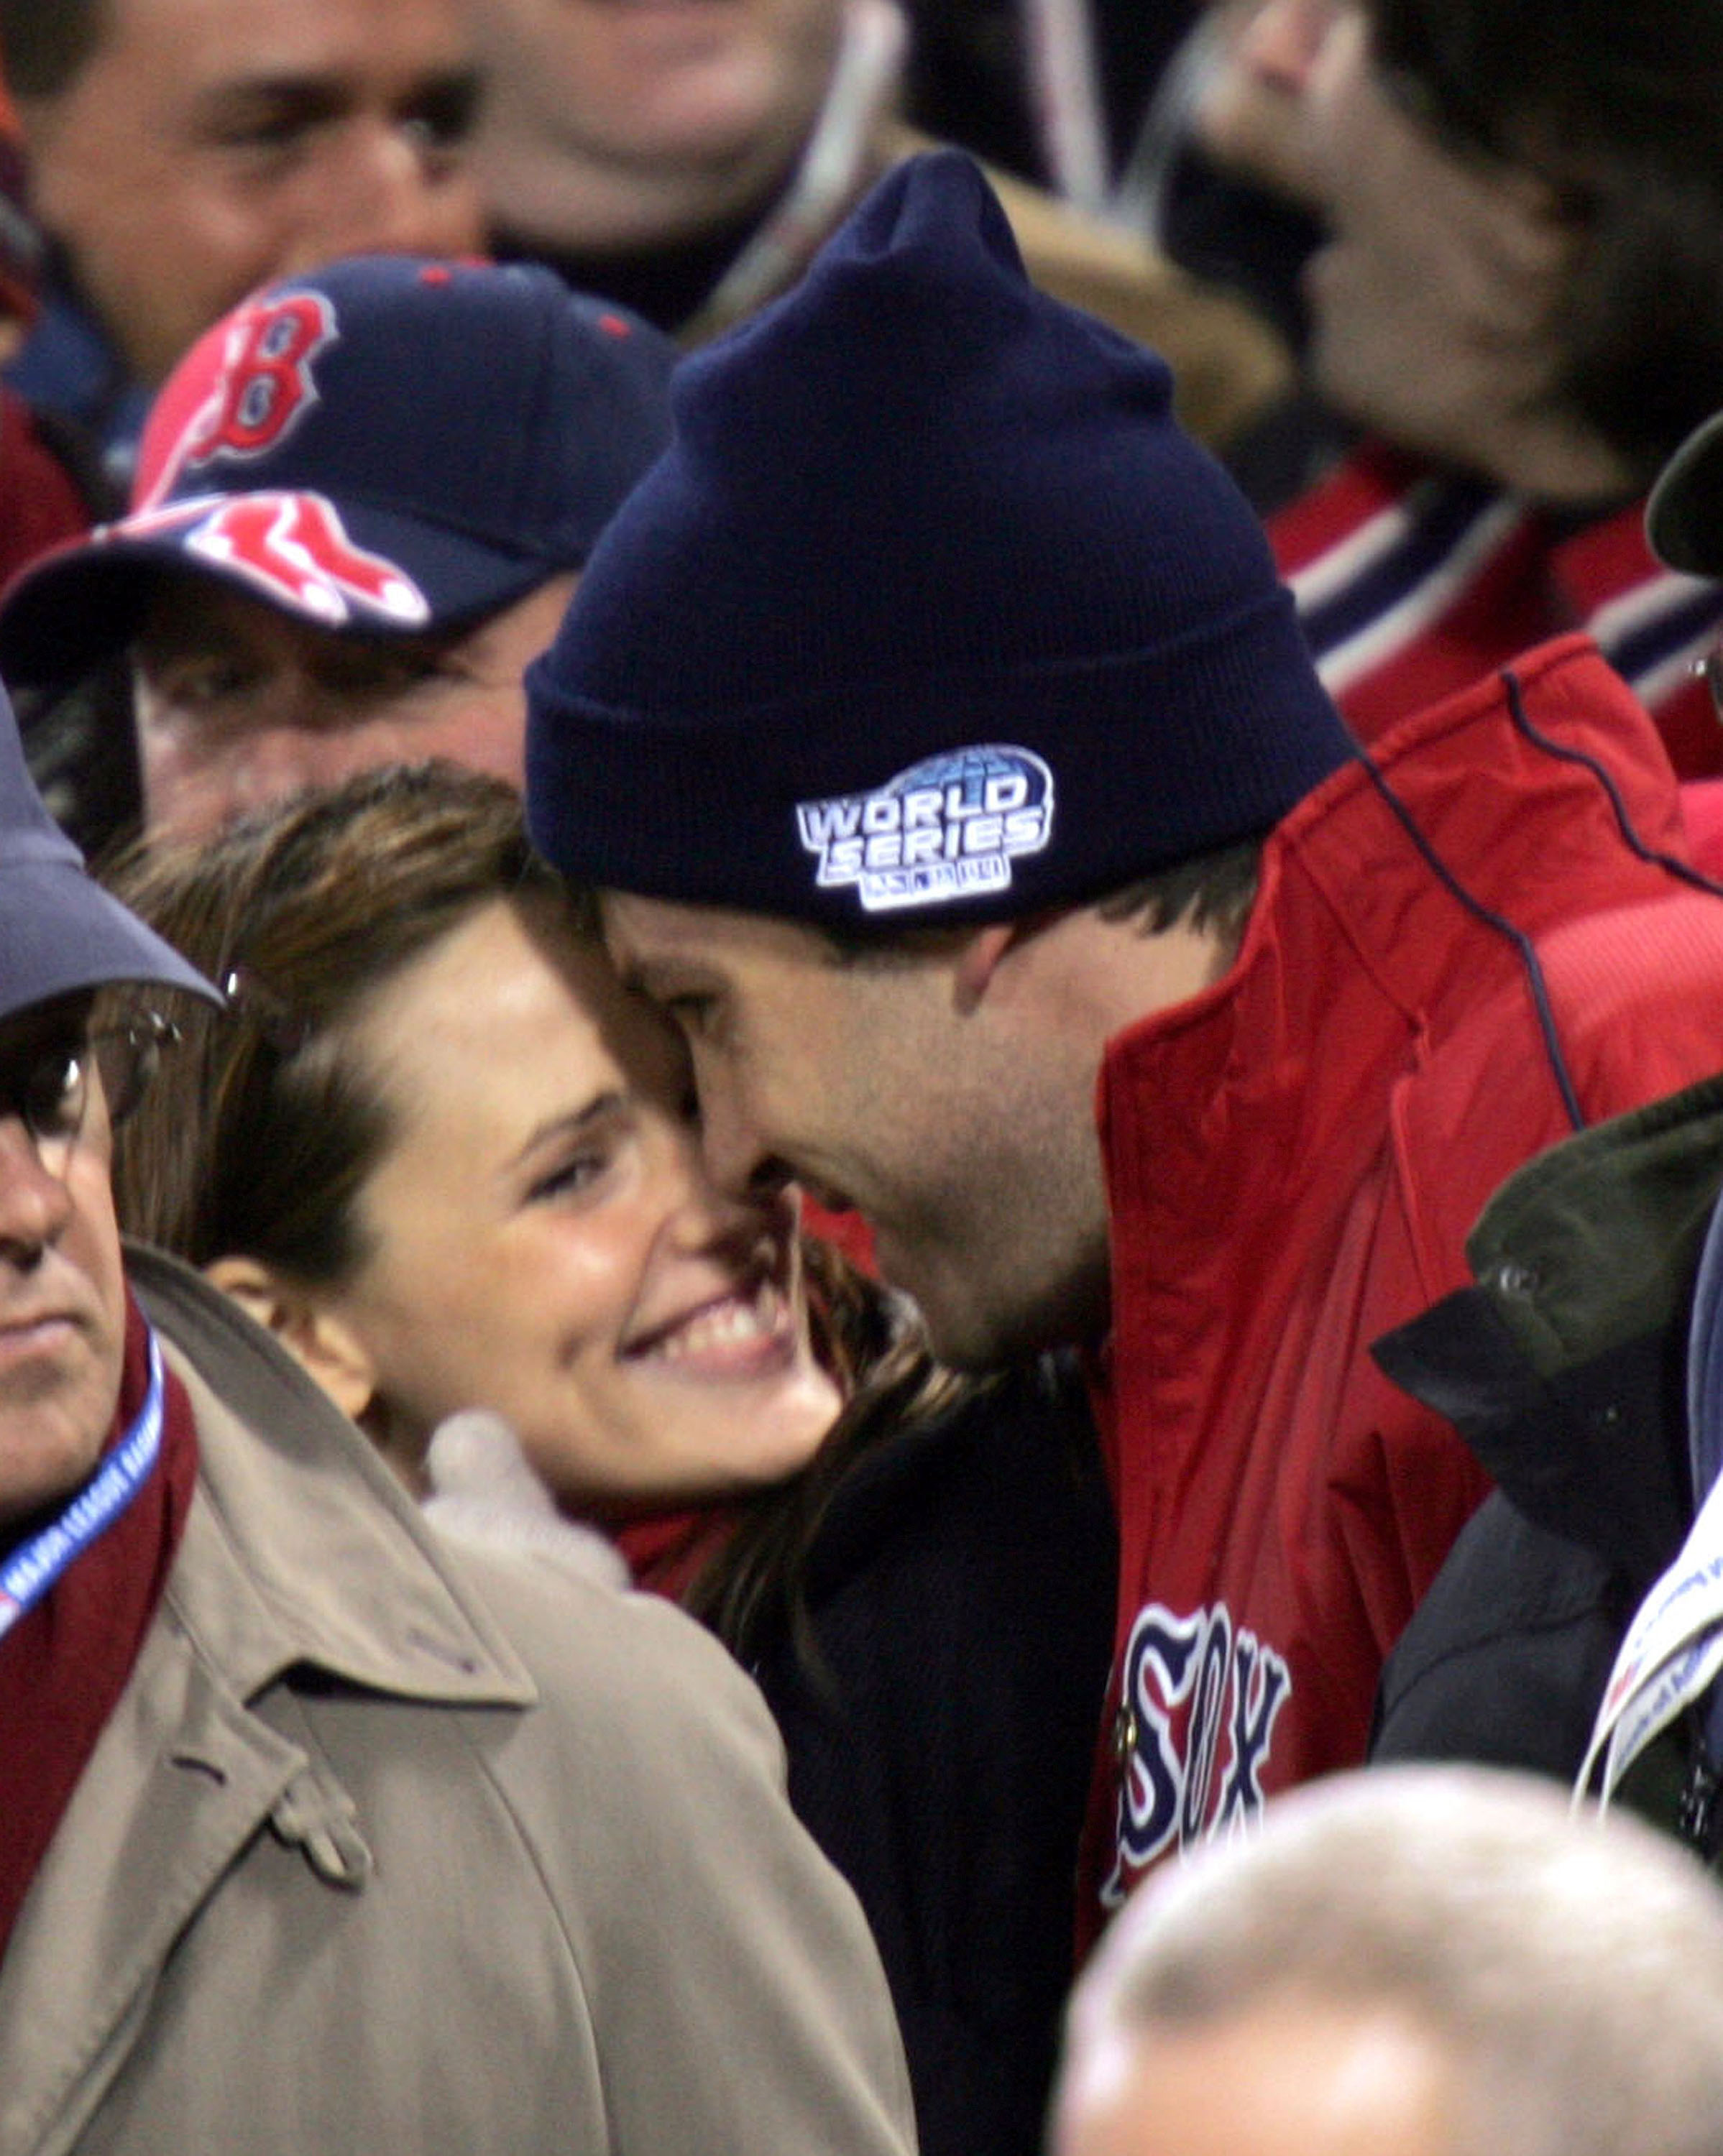 L'ancien couple lors du premier match des World Series 2004 au Fenway Park le 23 octobre 2004 | Source : Getty Images